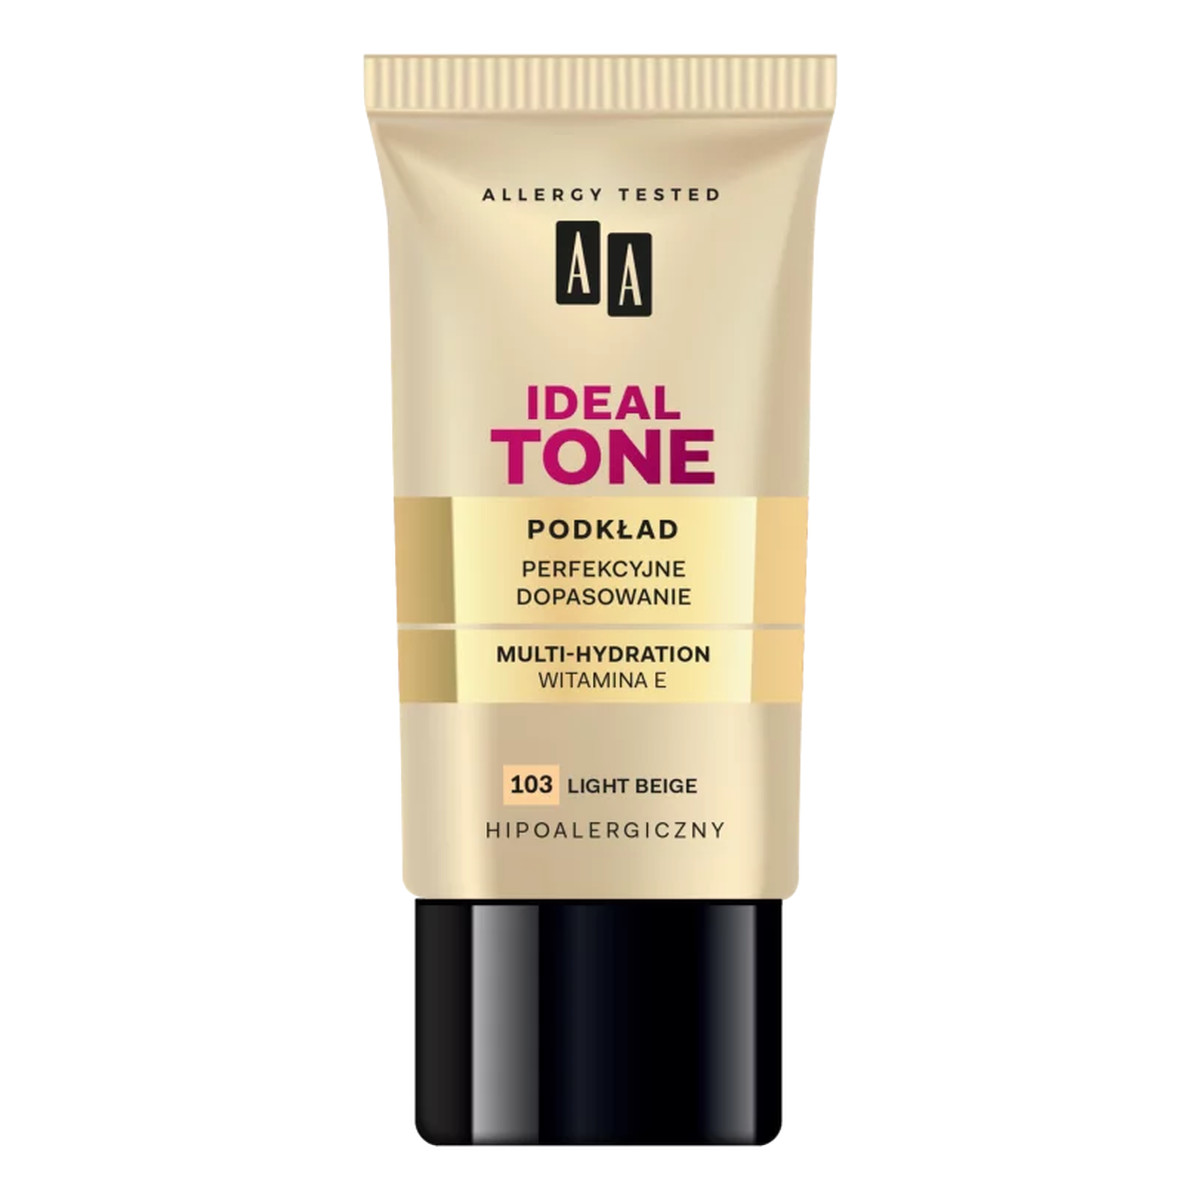 AA Make Up Ideal Tone Podkład "Perfekcyjne Dopasowanie" 30ml